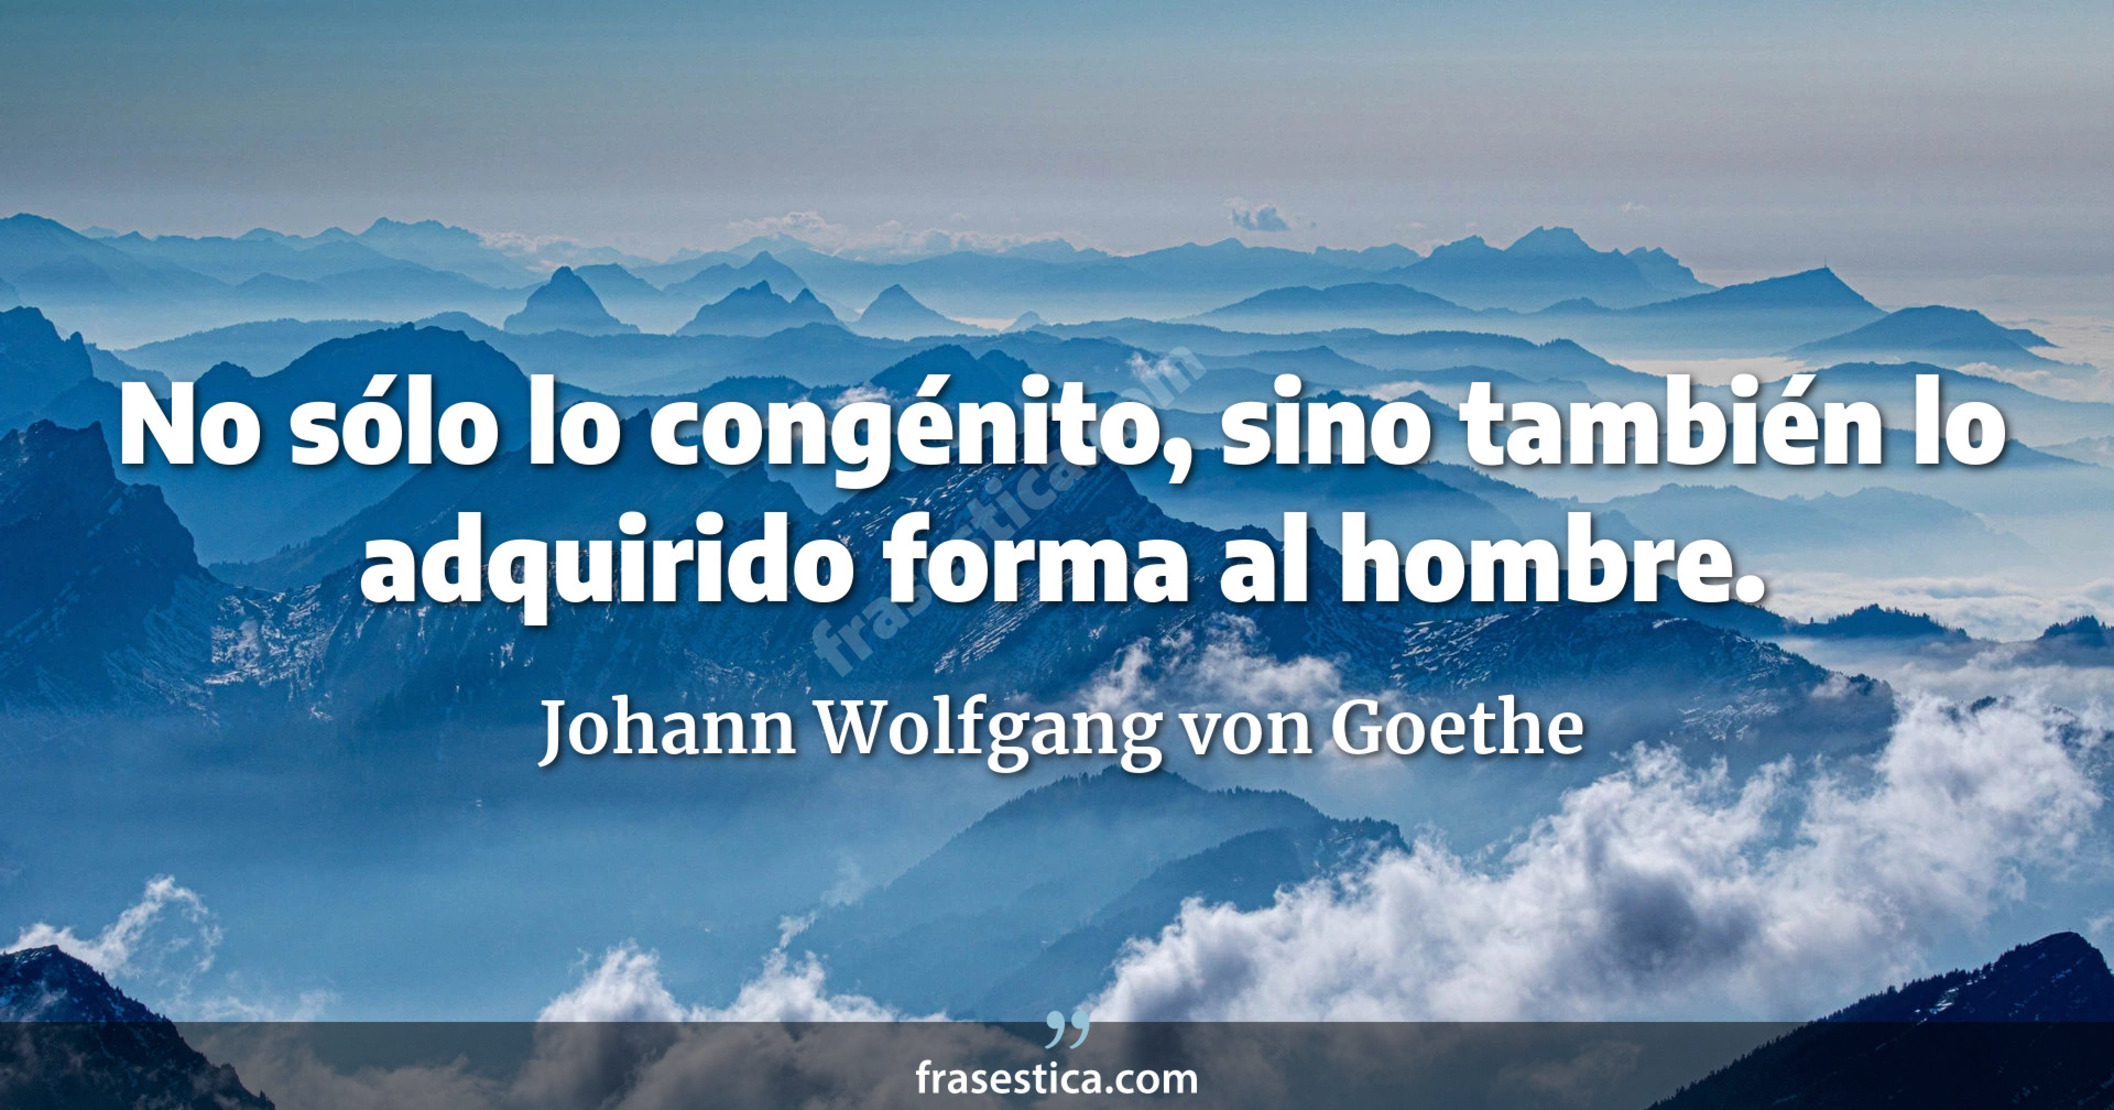 No sólo lo congénito, sino también lo adquirido forma al hombre. - Johann Wolfgang von Goethe